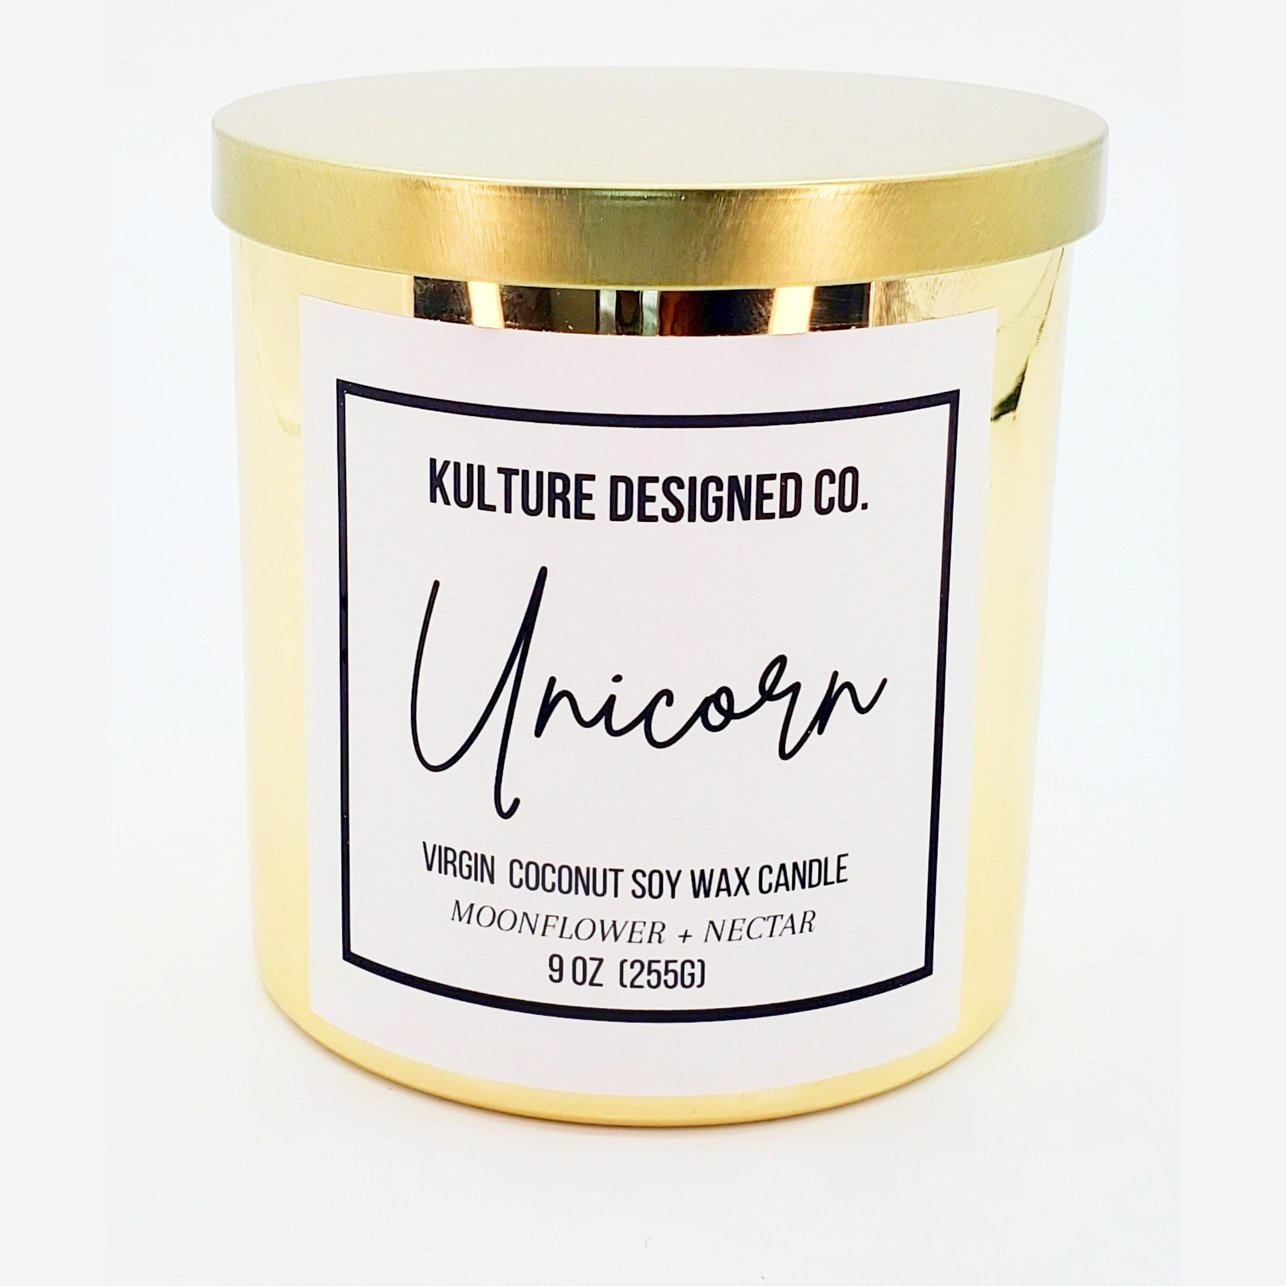 UNICORN - Kulture Designed Co.